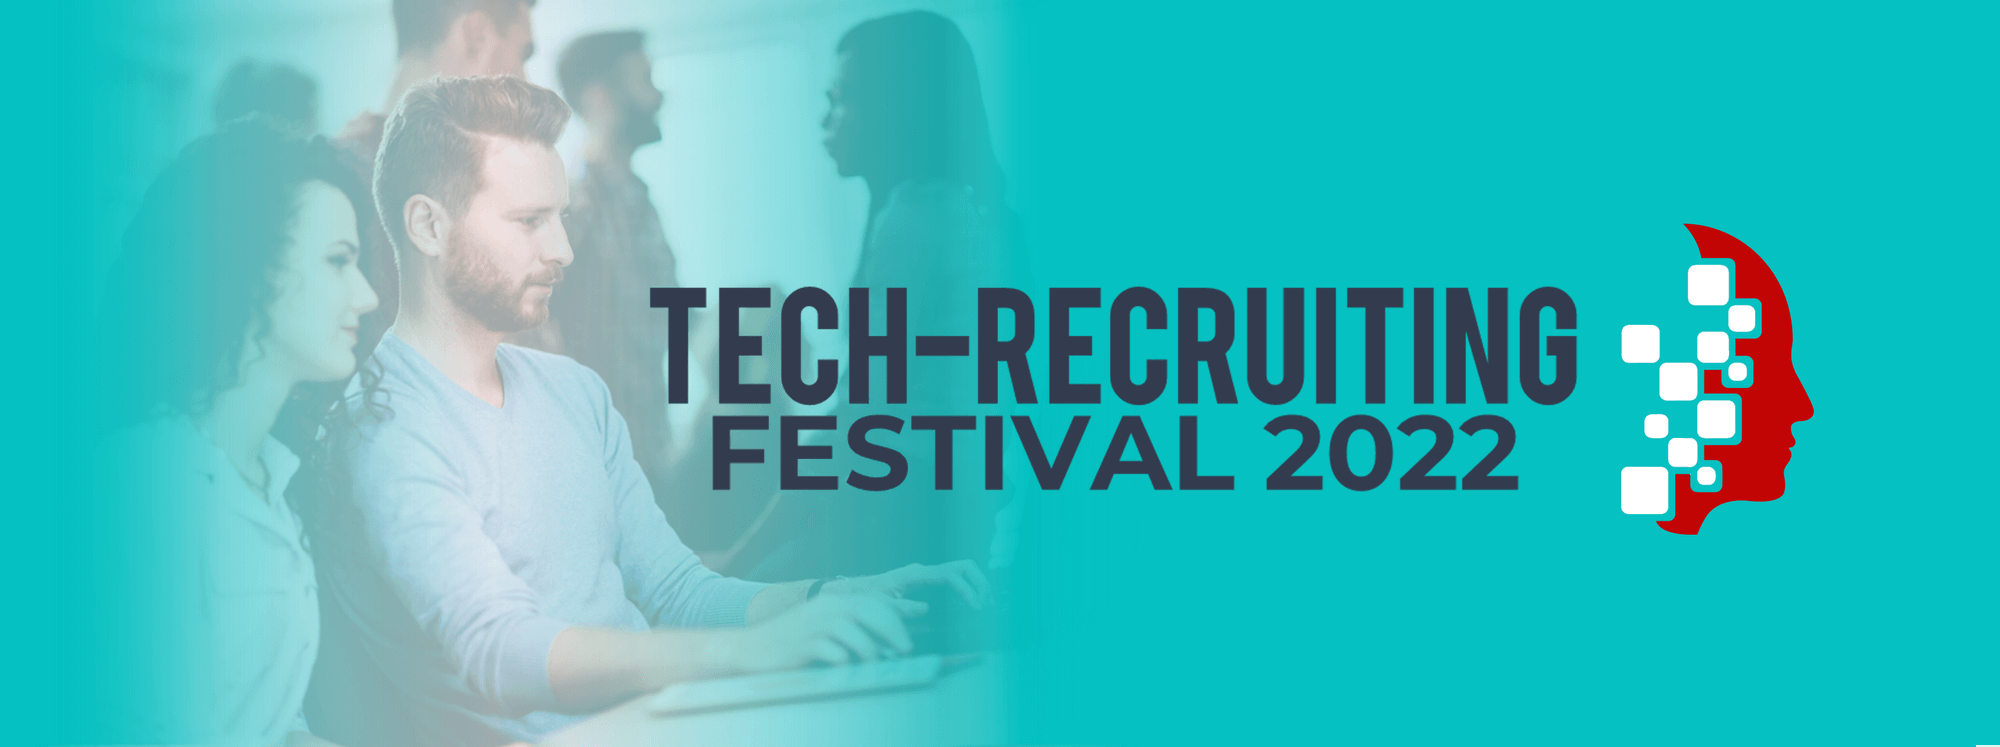 Tech-Rec-Festival 2022 - Kurs-HEADER 2